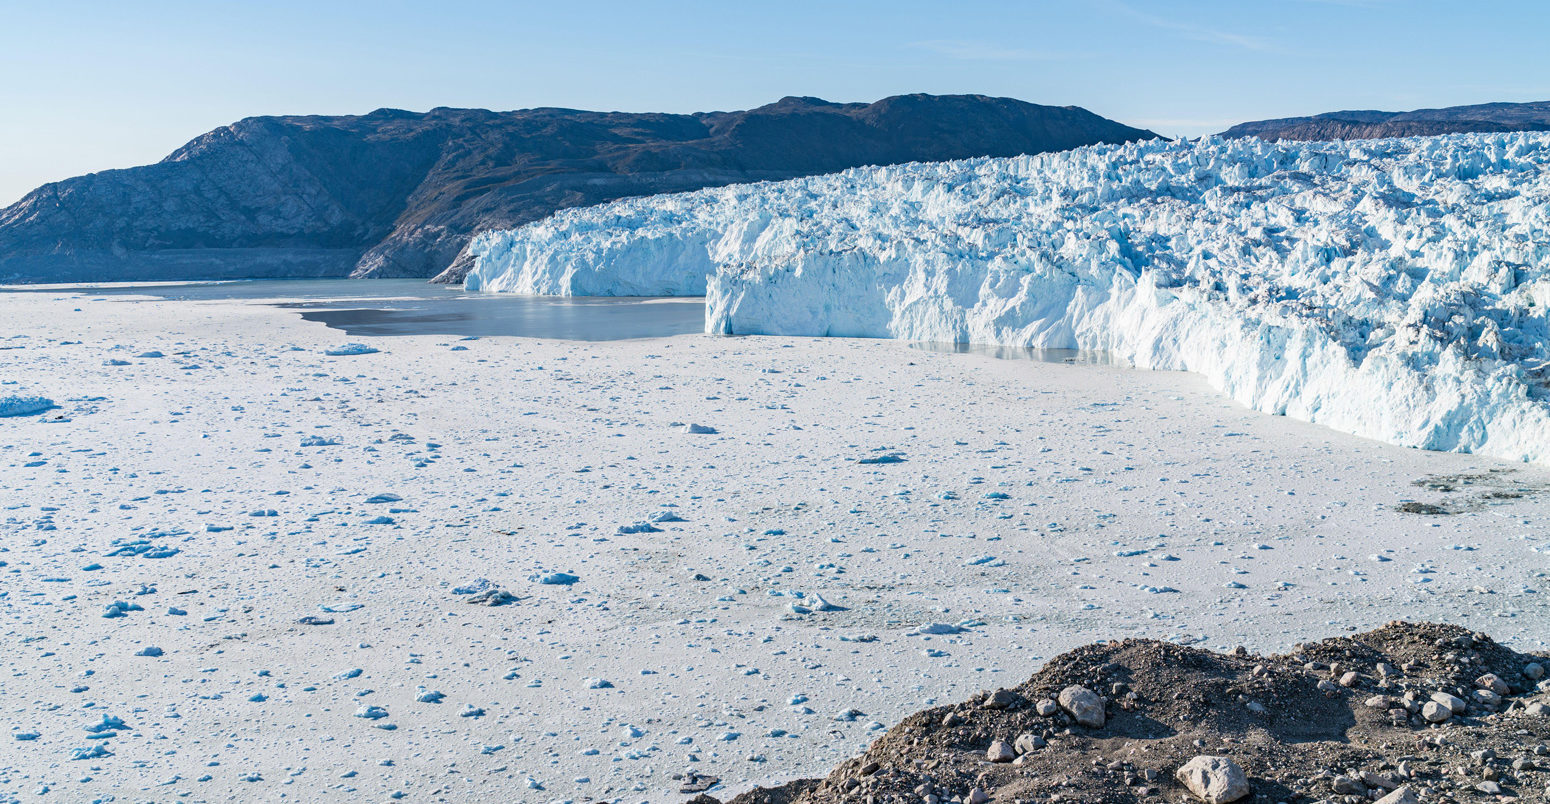 Glacier front of Eqi glacier in West Greenland.